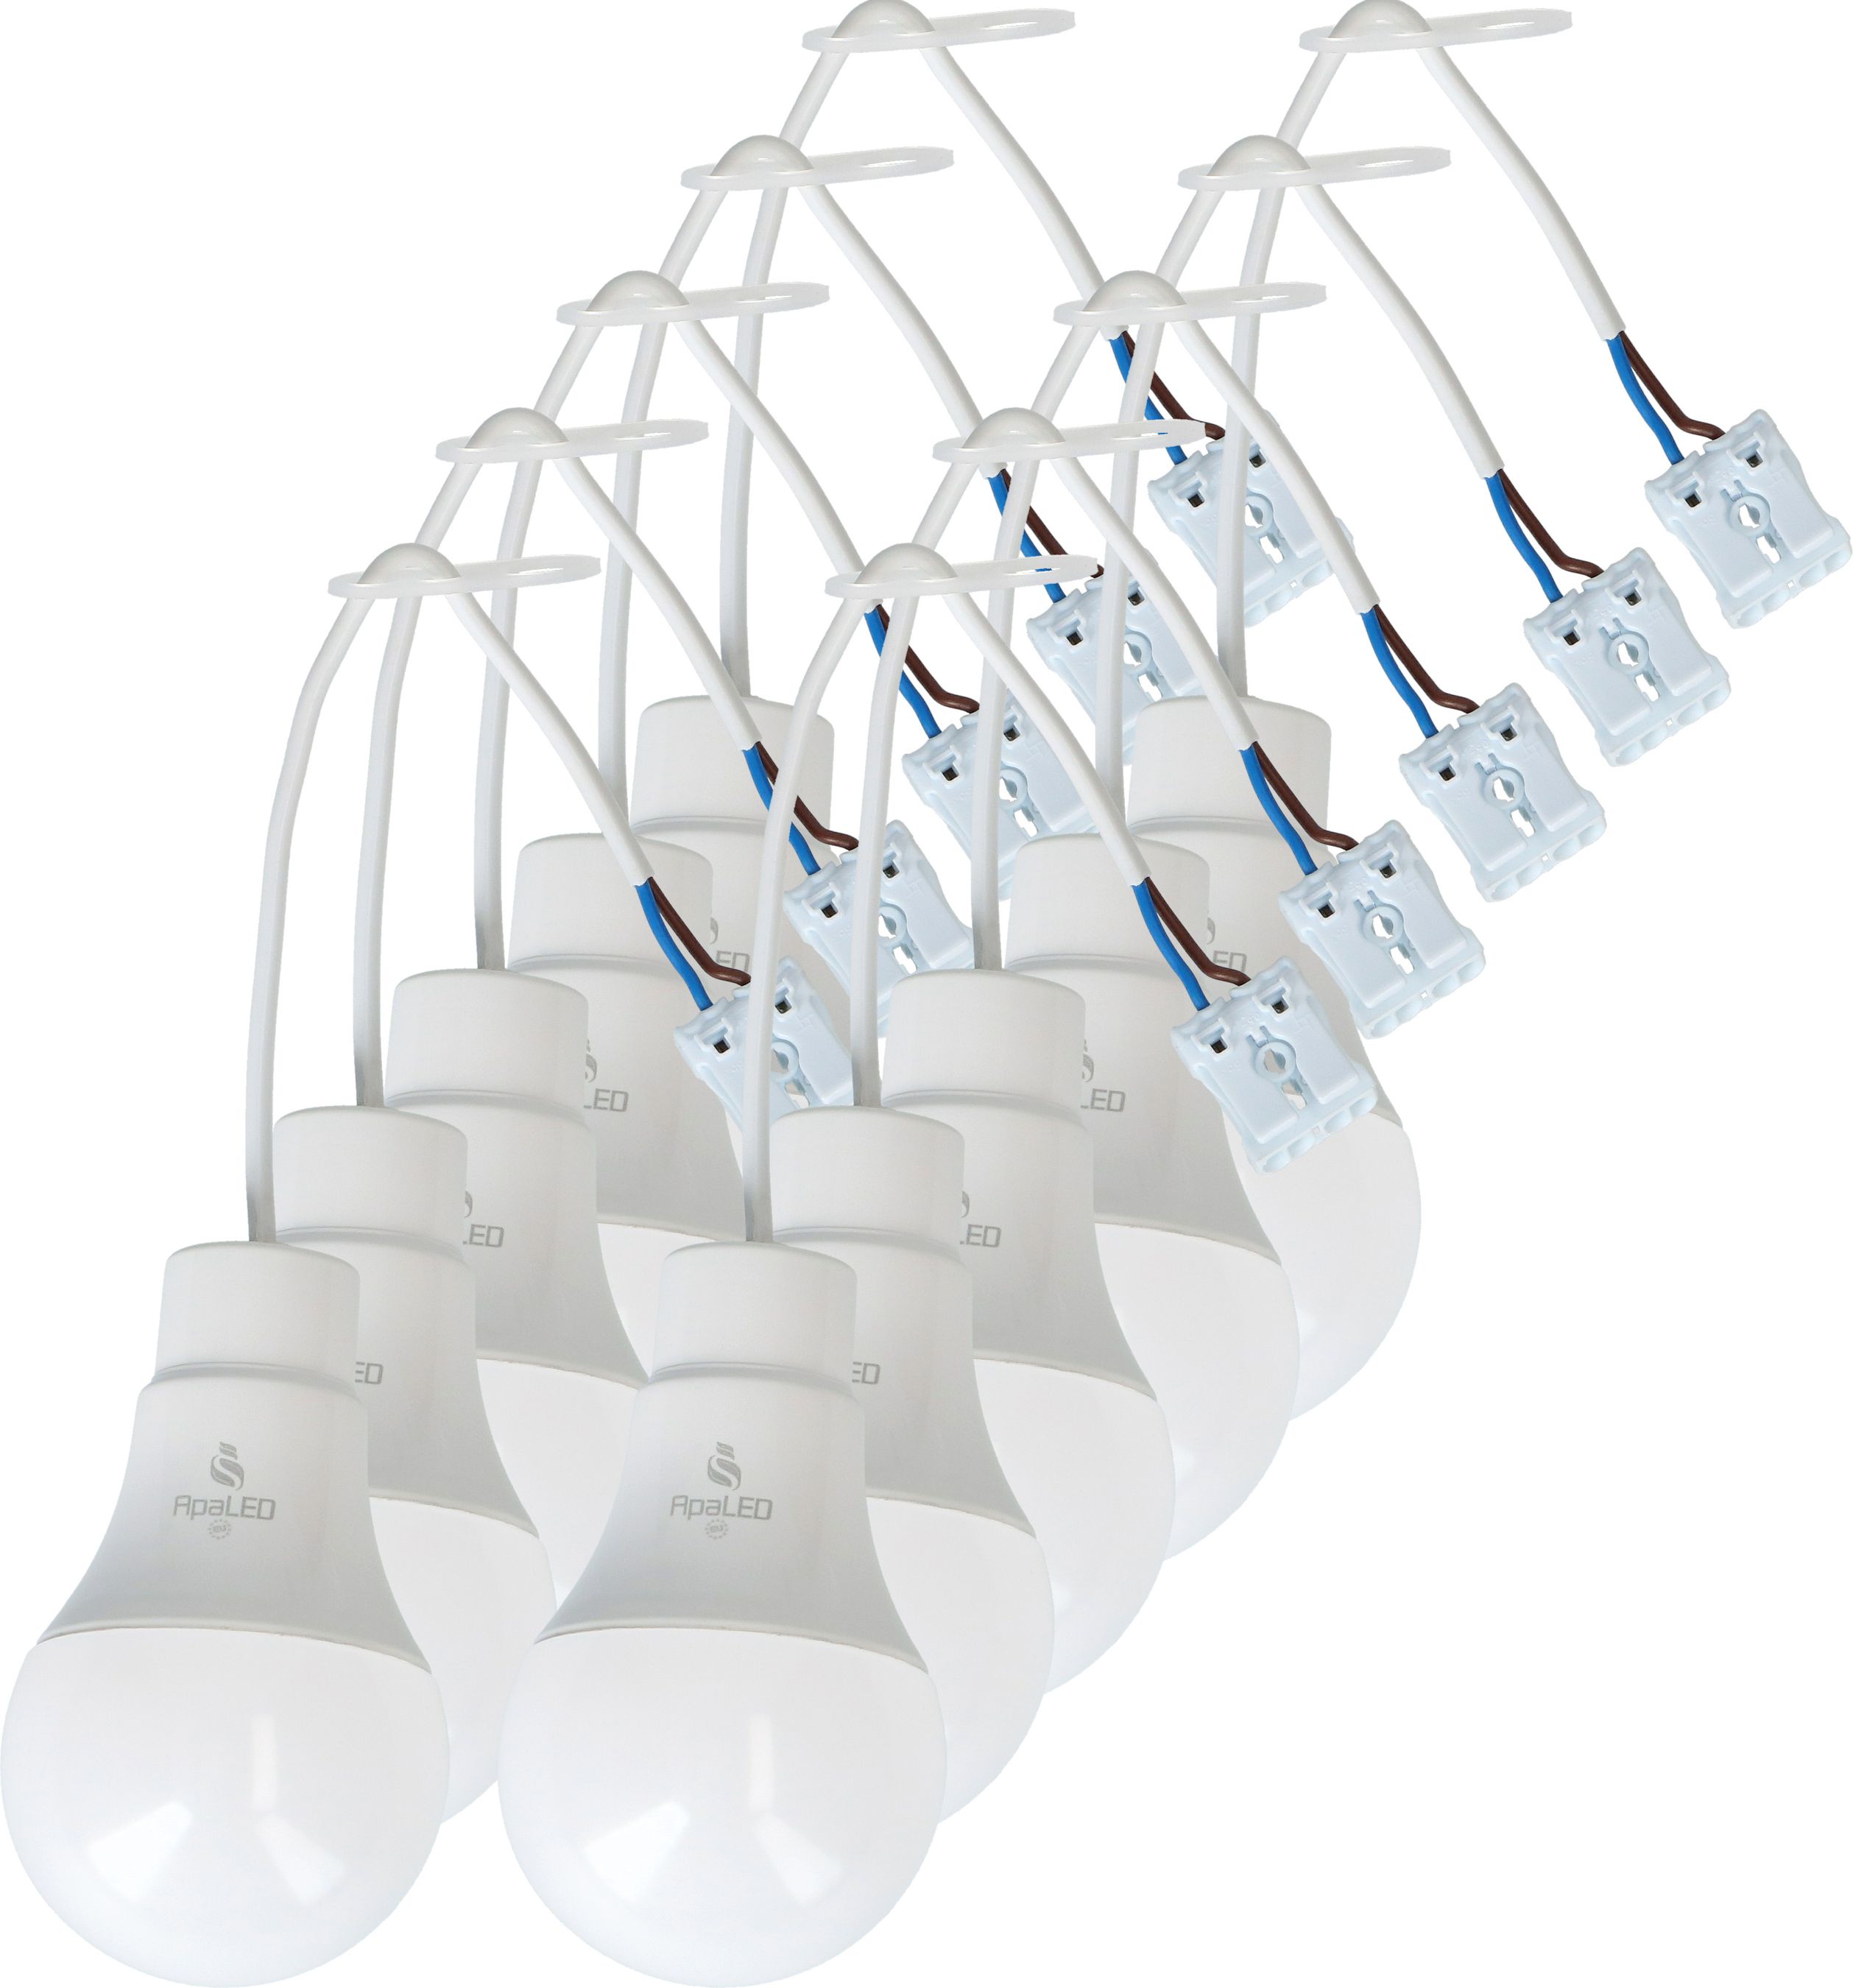 Baustellenlampe LED konfektioniert mit Anschlusskabel - MAX HAURI AG